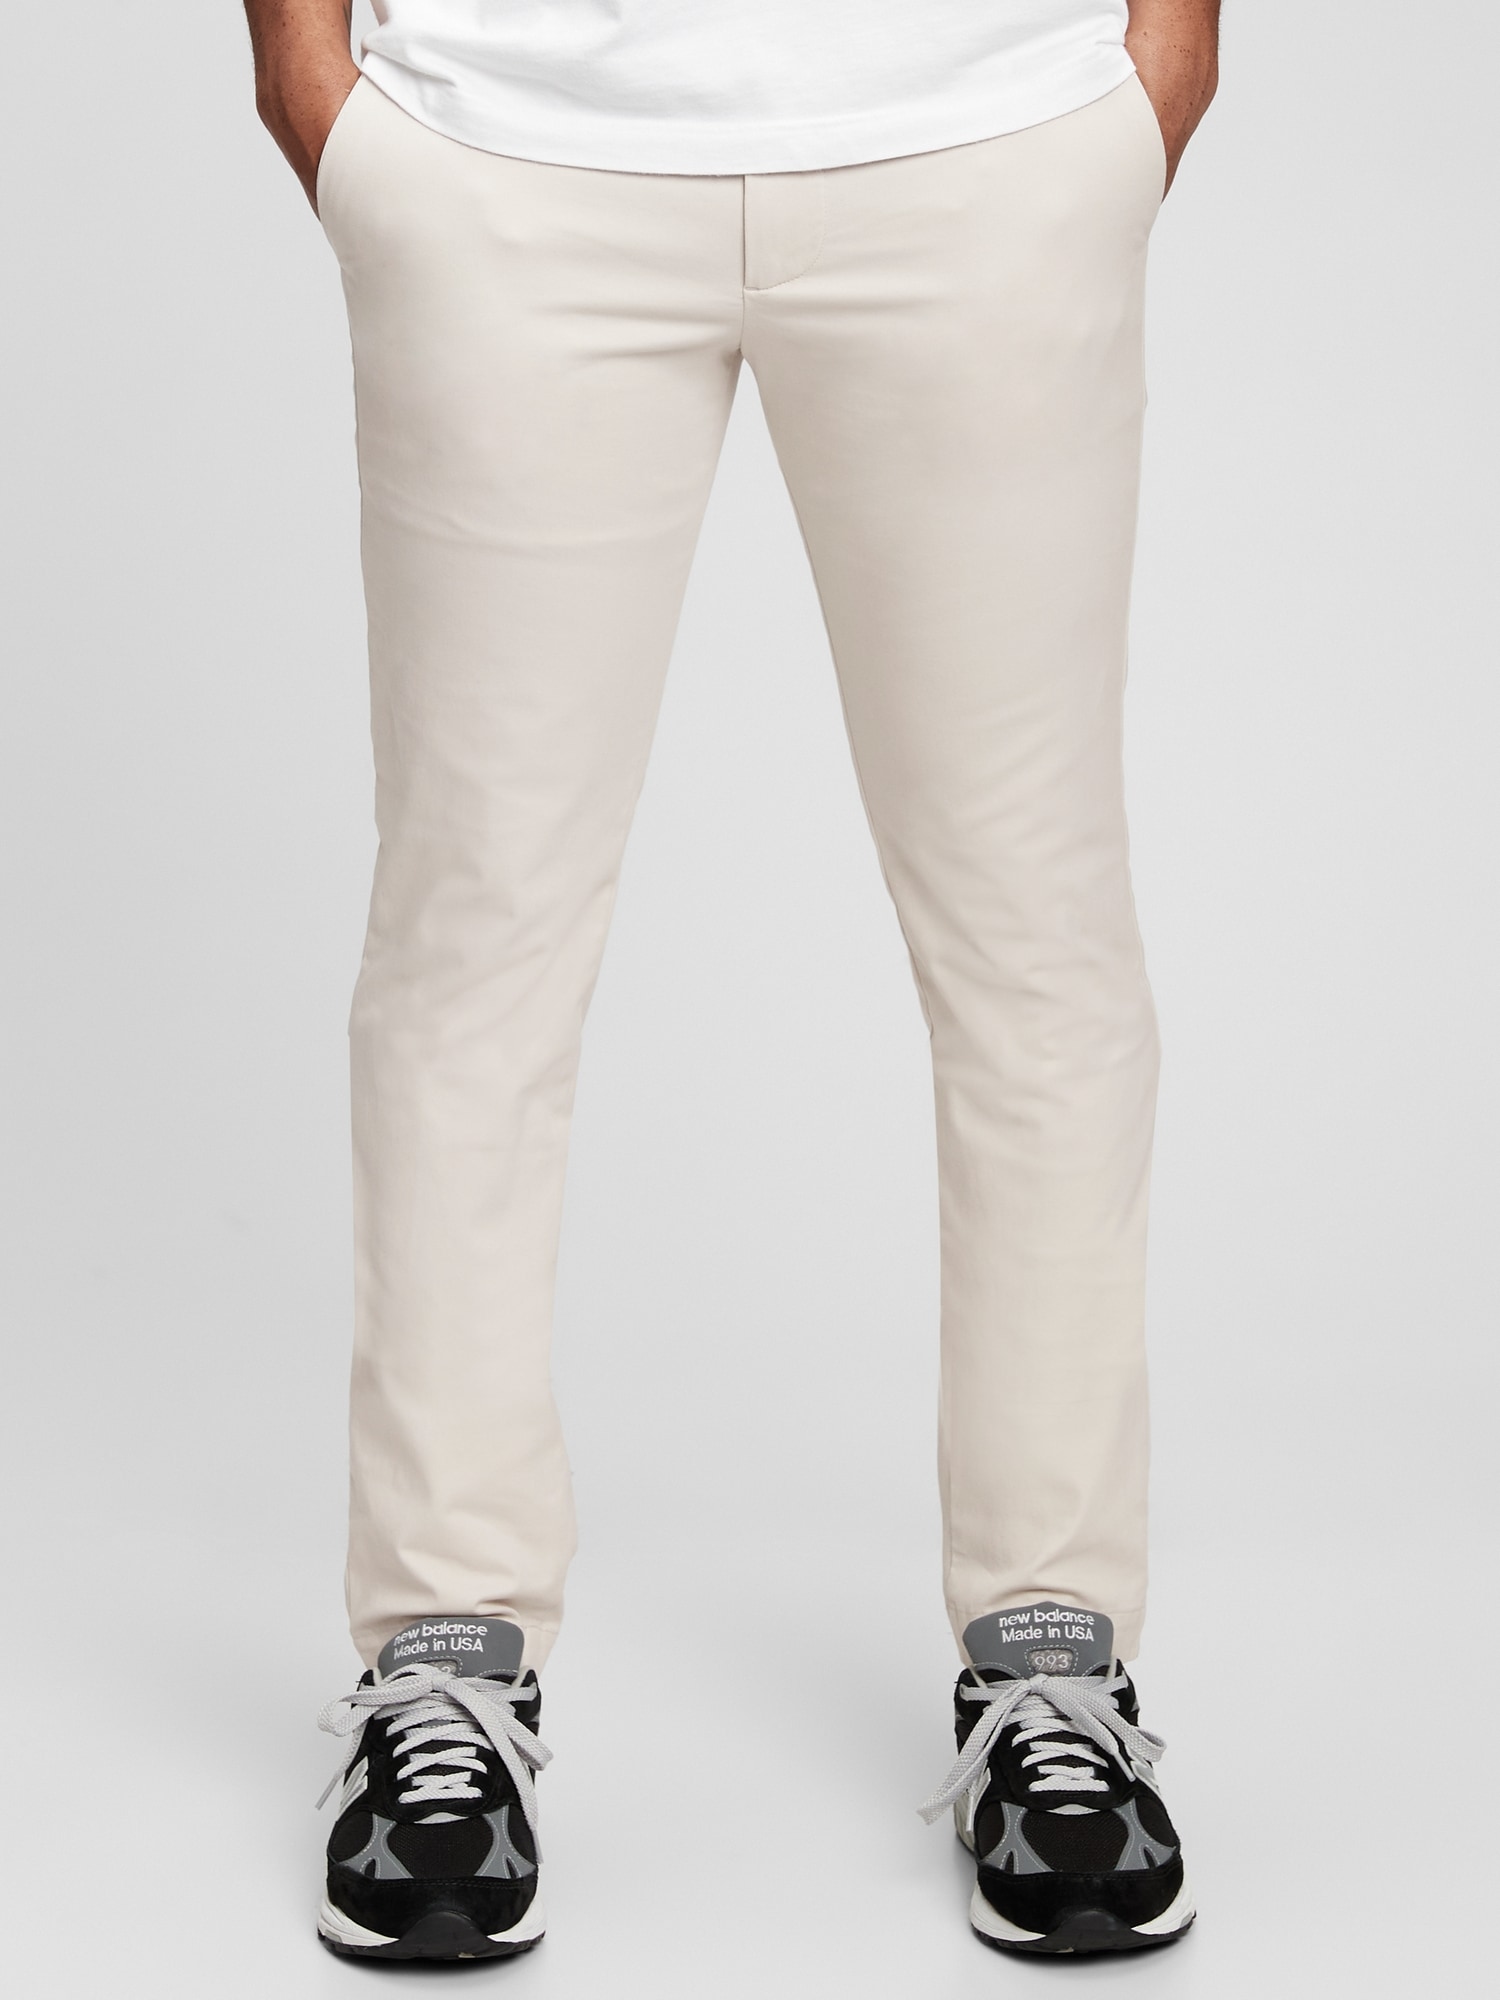 Share 90+ gap chino trousers latest - in.duhocakina